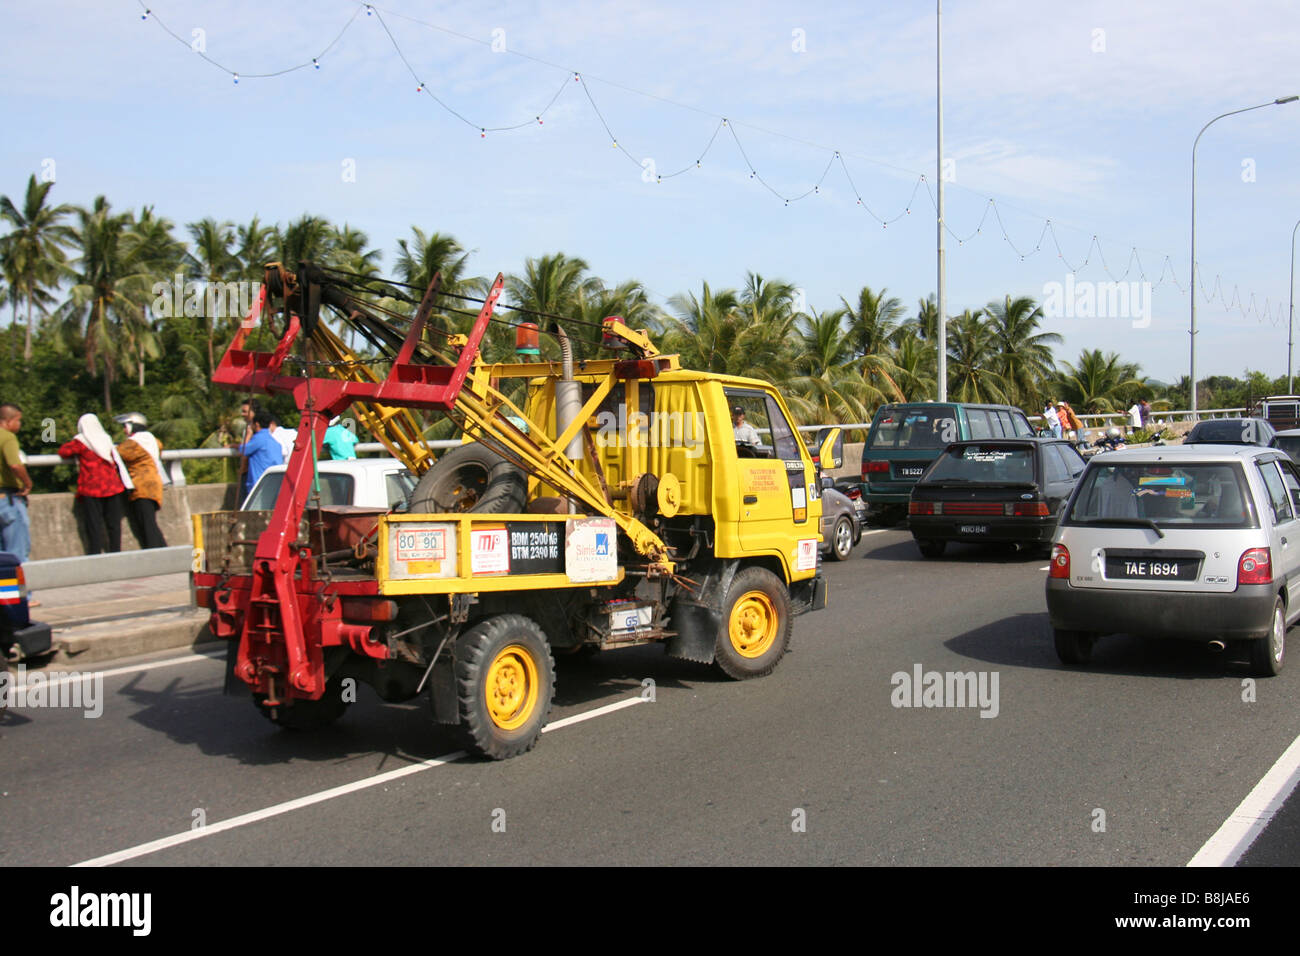 Tow truck in Kuala Terengganu, Malaysia Stock Photo: 22530990 - Alamy